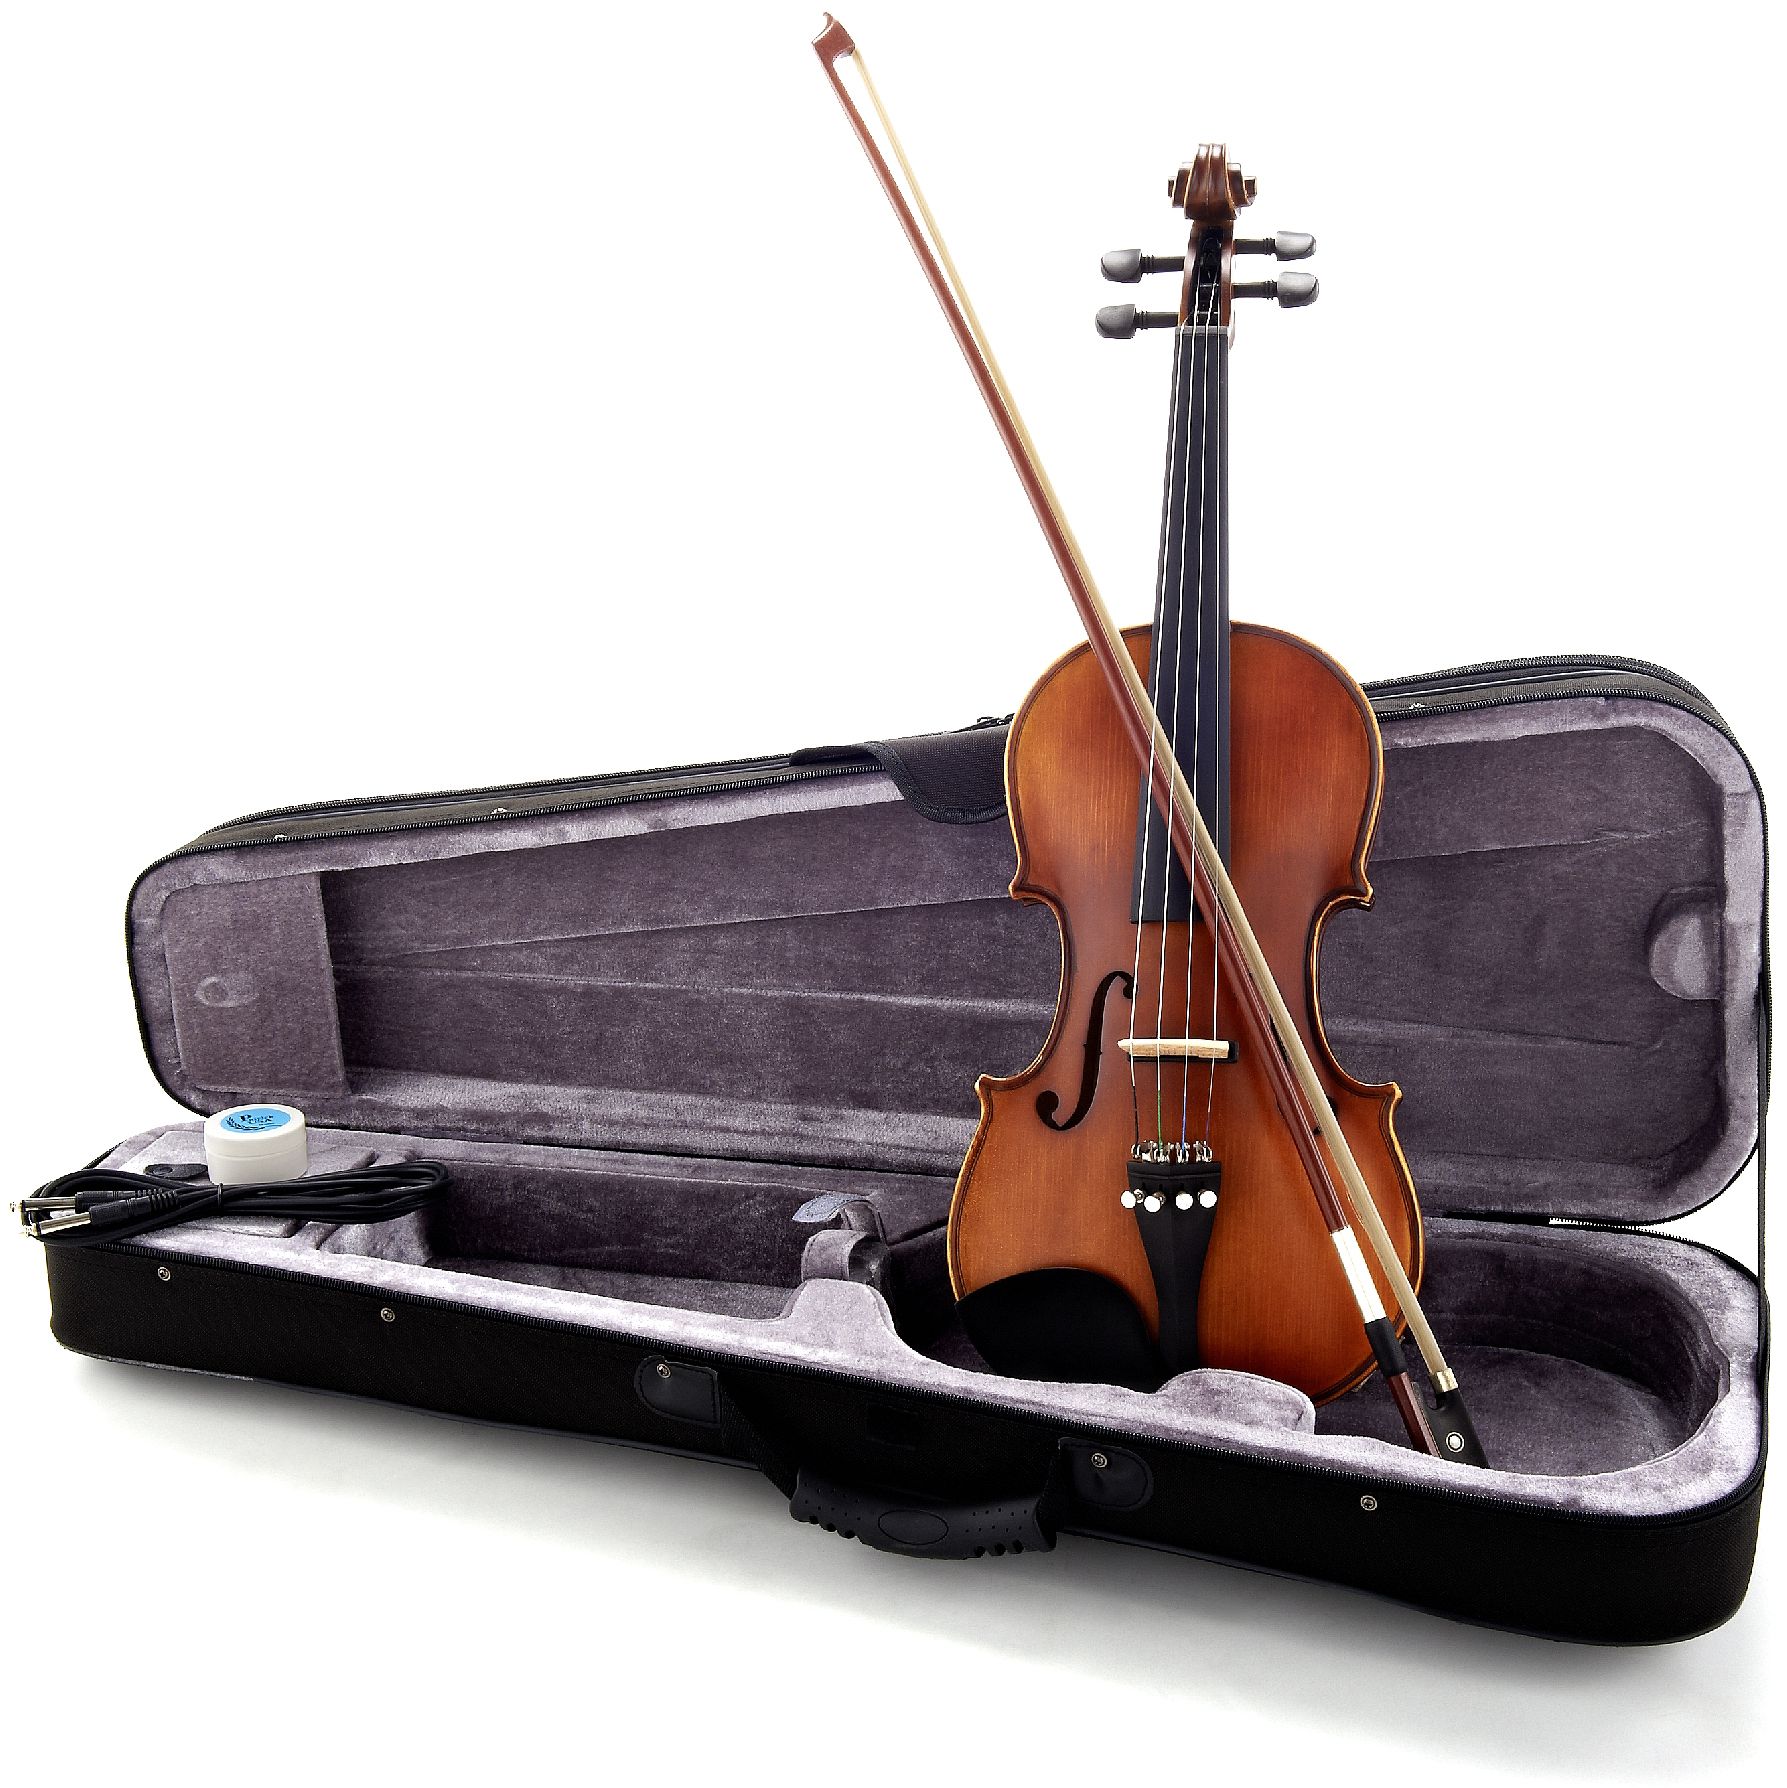 Harley Benton электроскрипка. Harley Benton HBV 870y 4/4 Electric Violin. 124 Cellos instrument. E violins